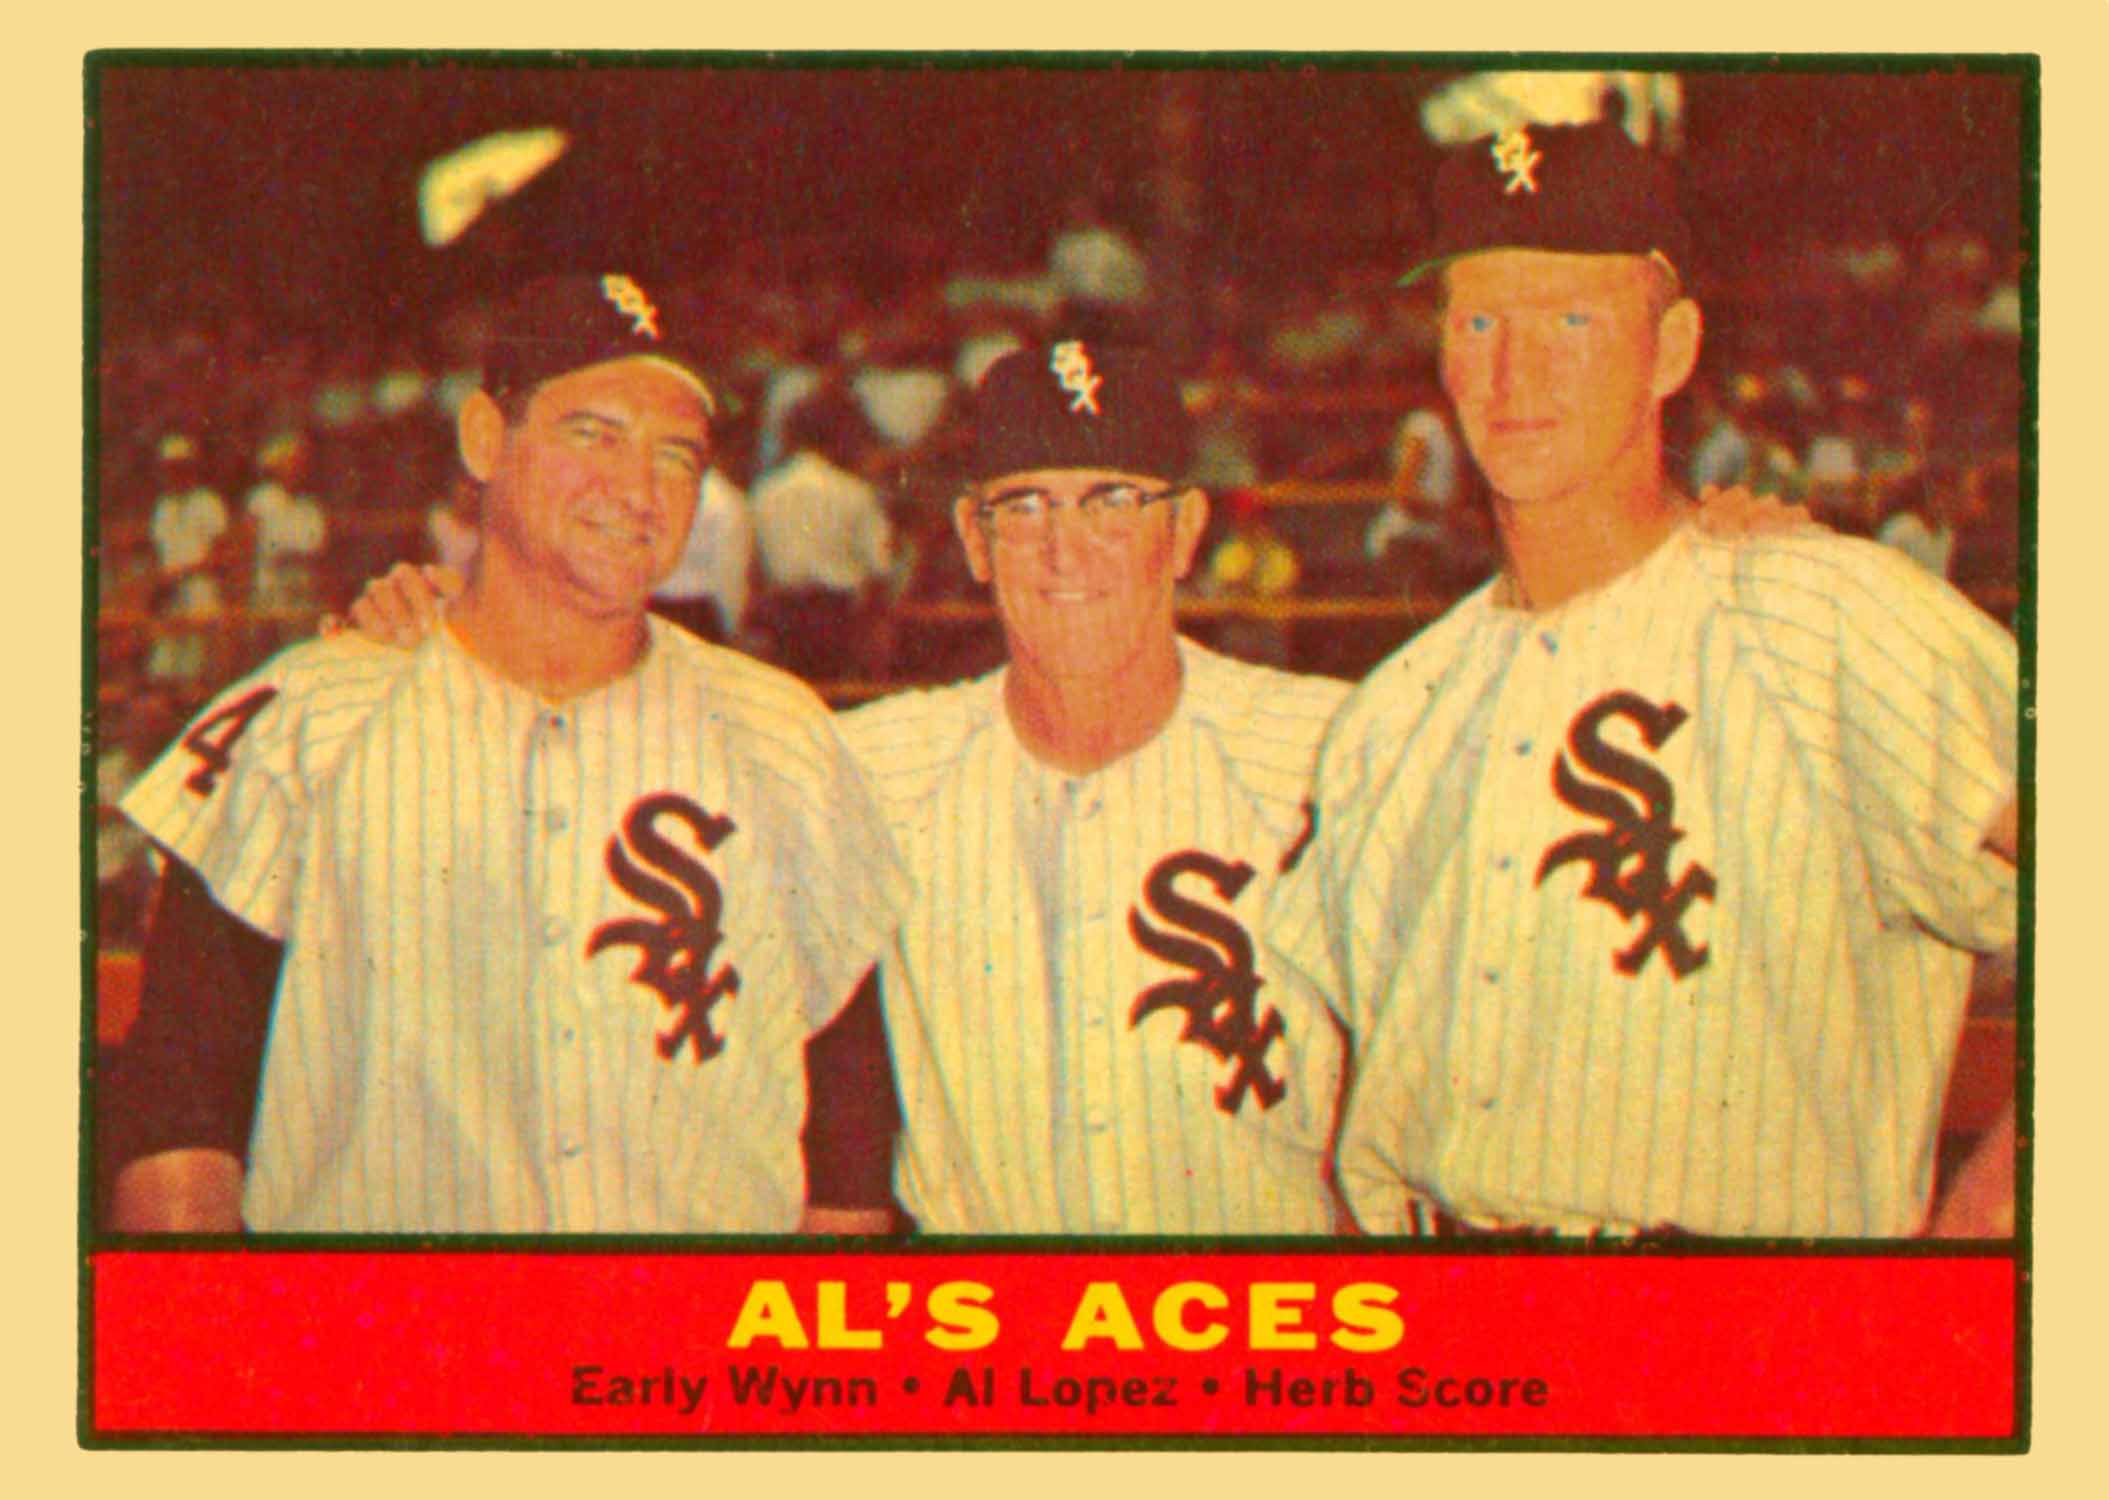 1961 Topps Al's Aces